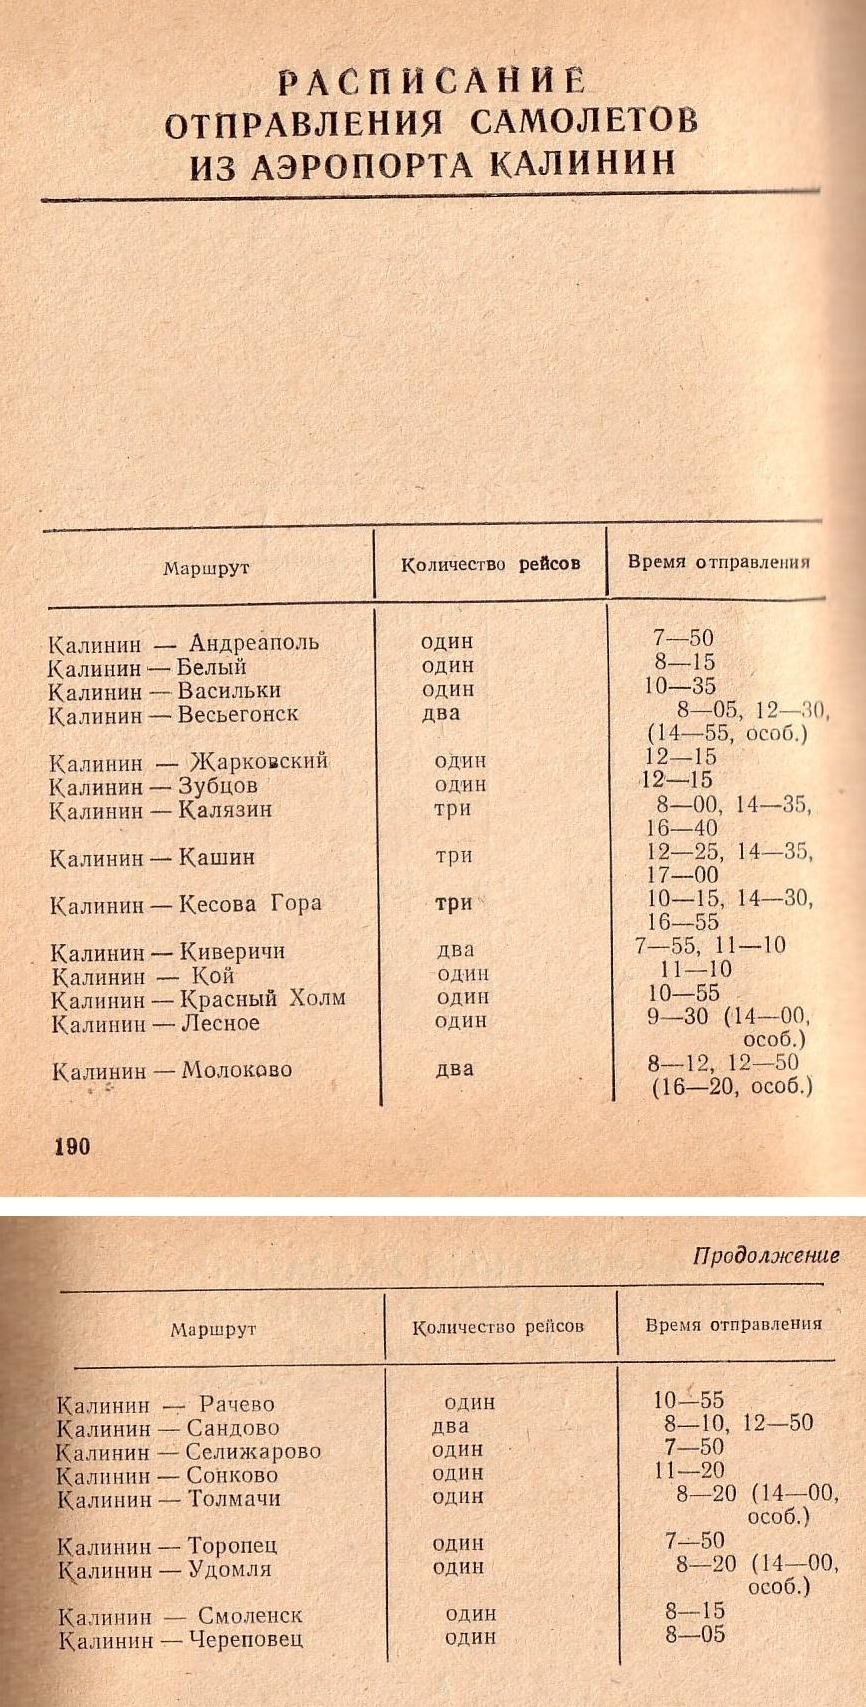 Расписание отправления самолётов из аэропорта города Калинин (Тверь) на 1977 год